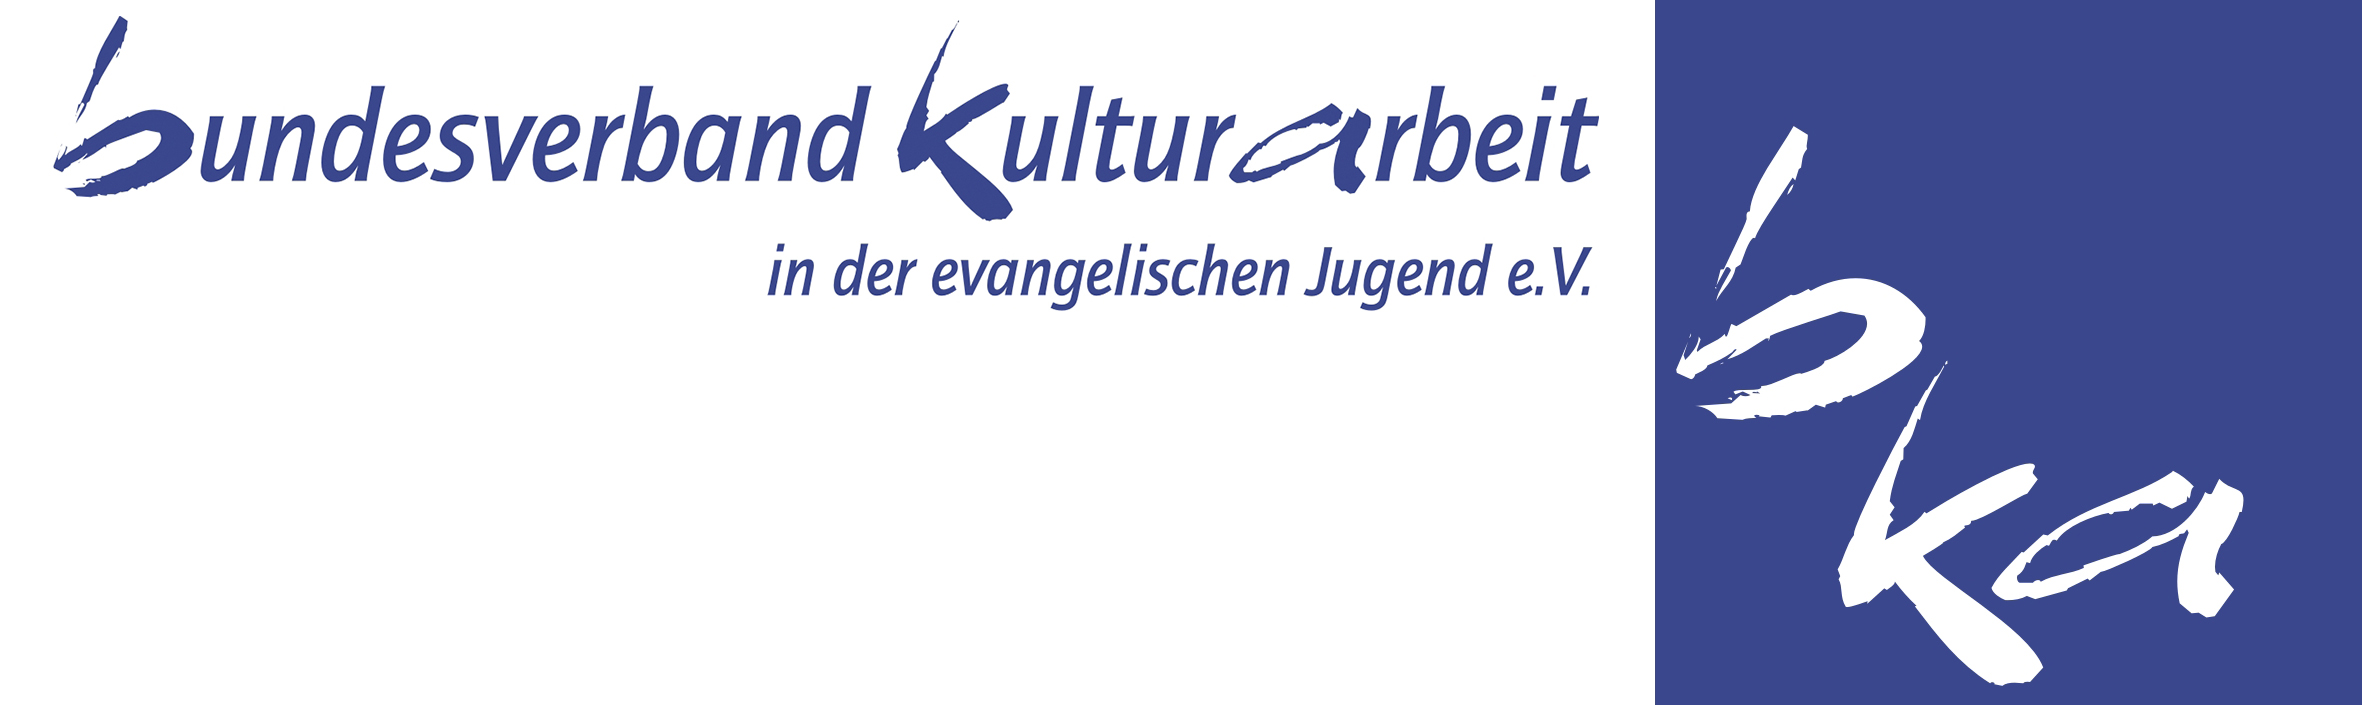 Logo_bka_Würfel-Schriftzug.png